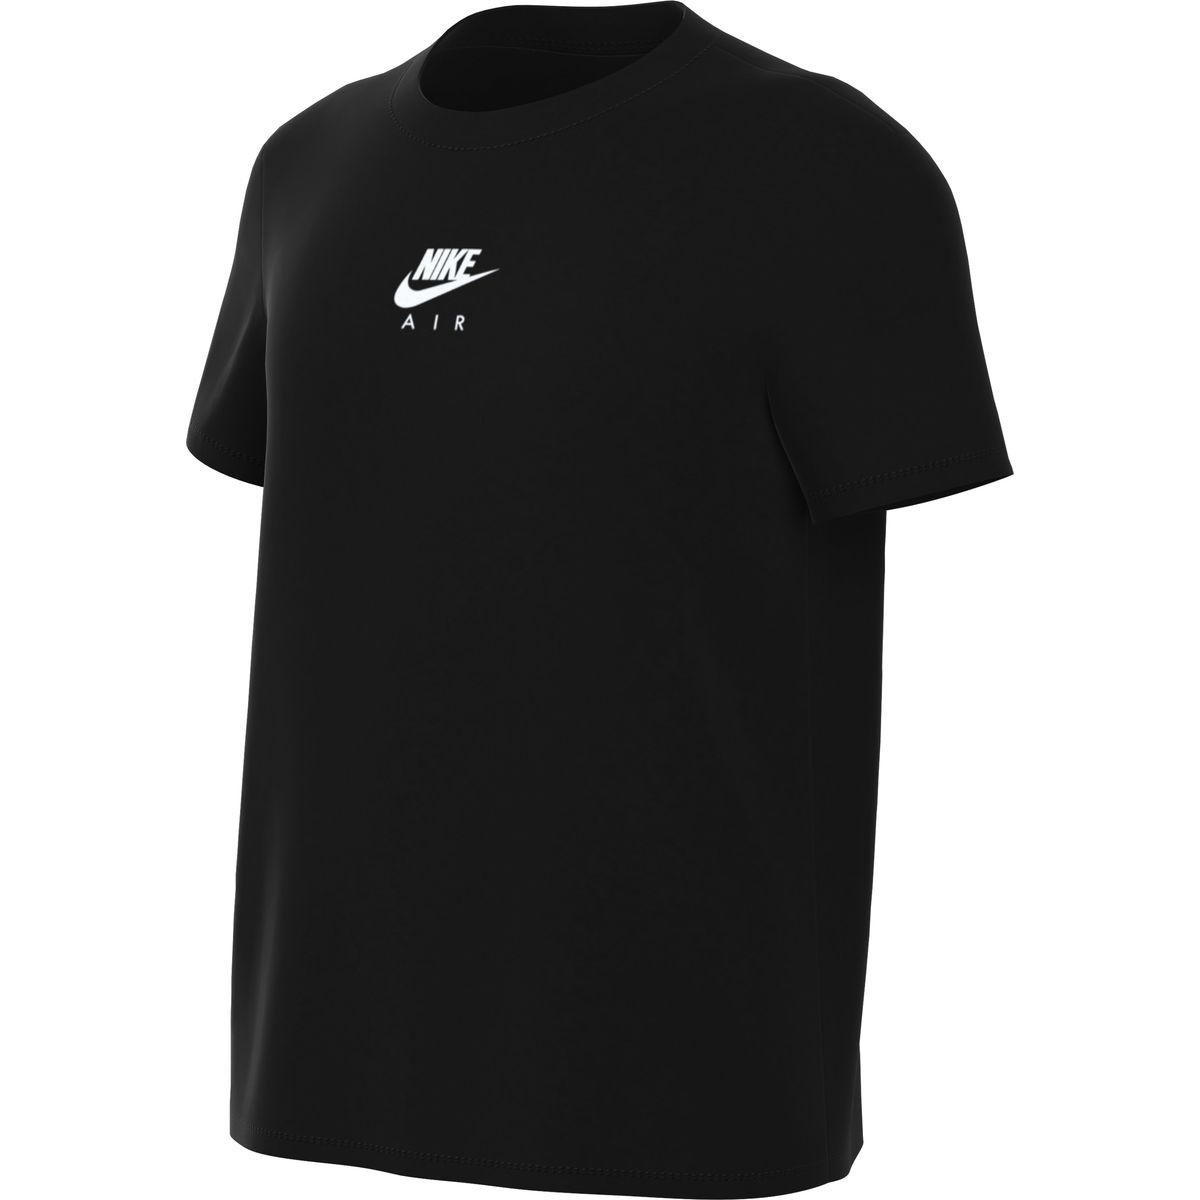 Nike Air Mädchen T-Shirt